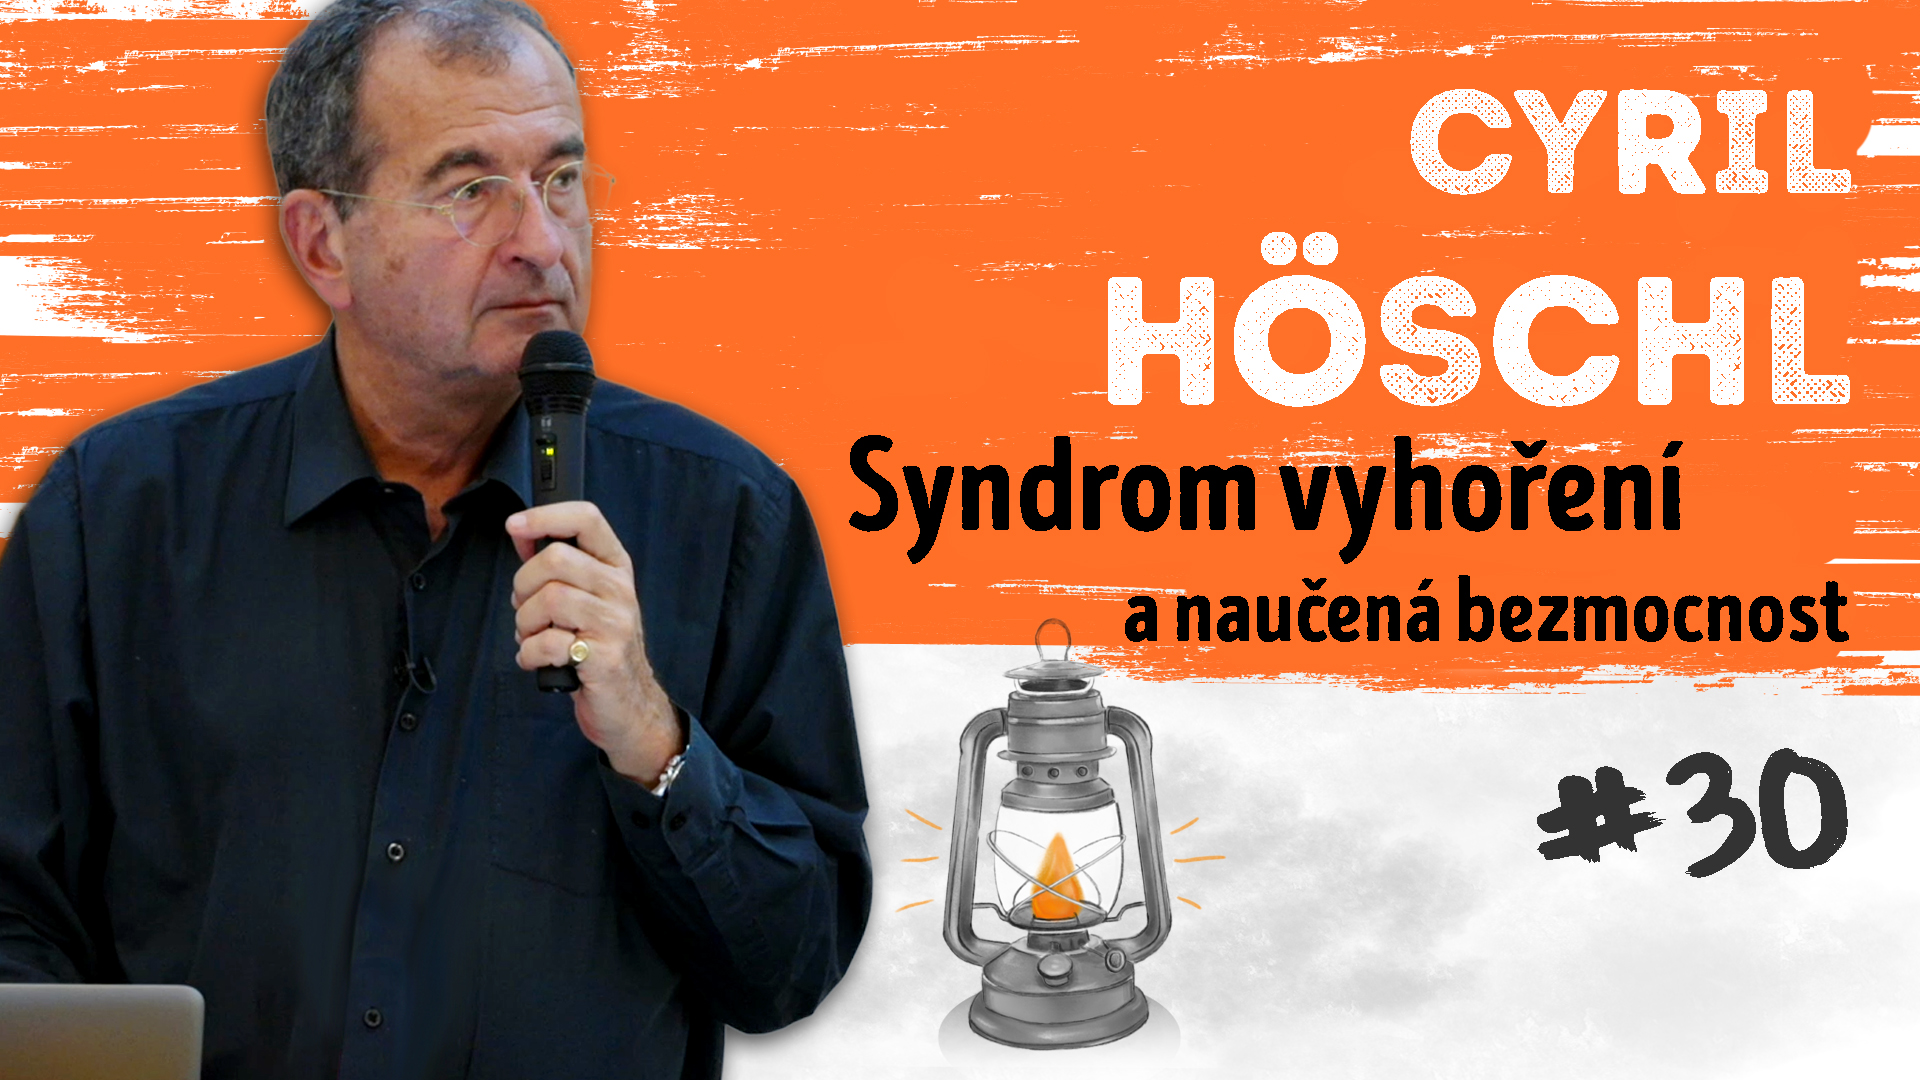 Cyril Höschl - Syndrom vyhoření a naučená bezmocnost